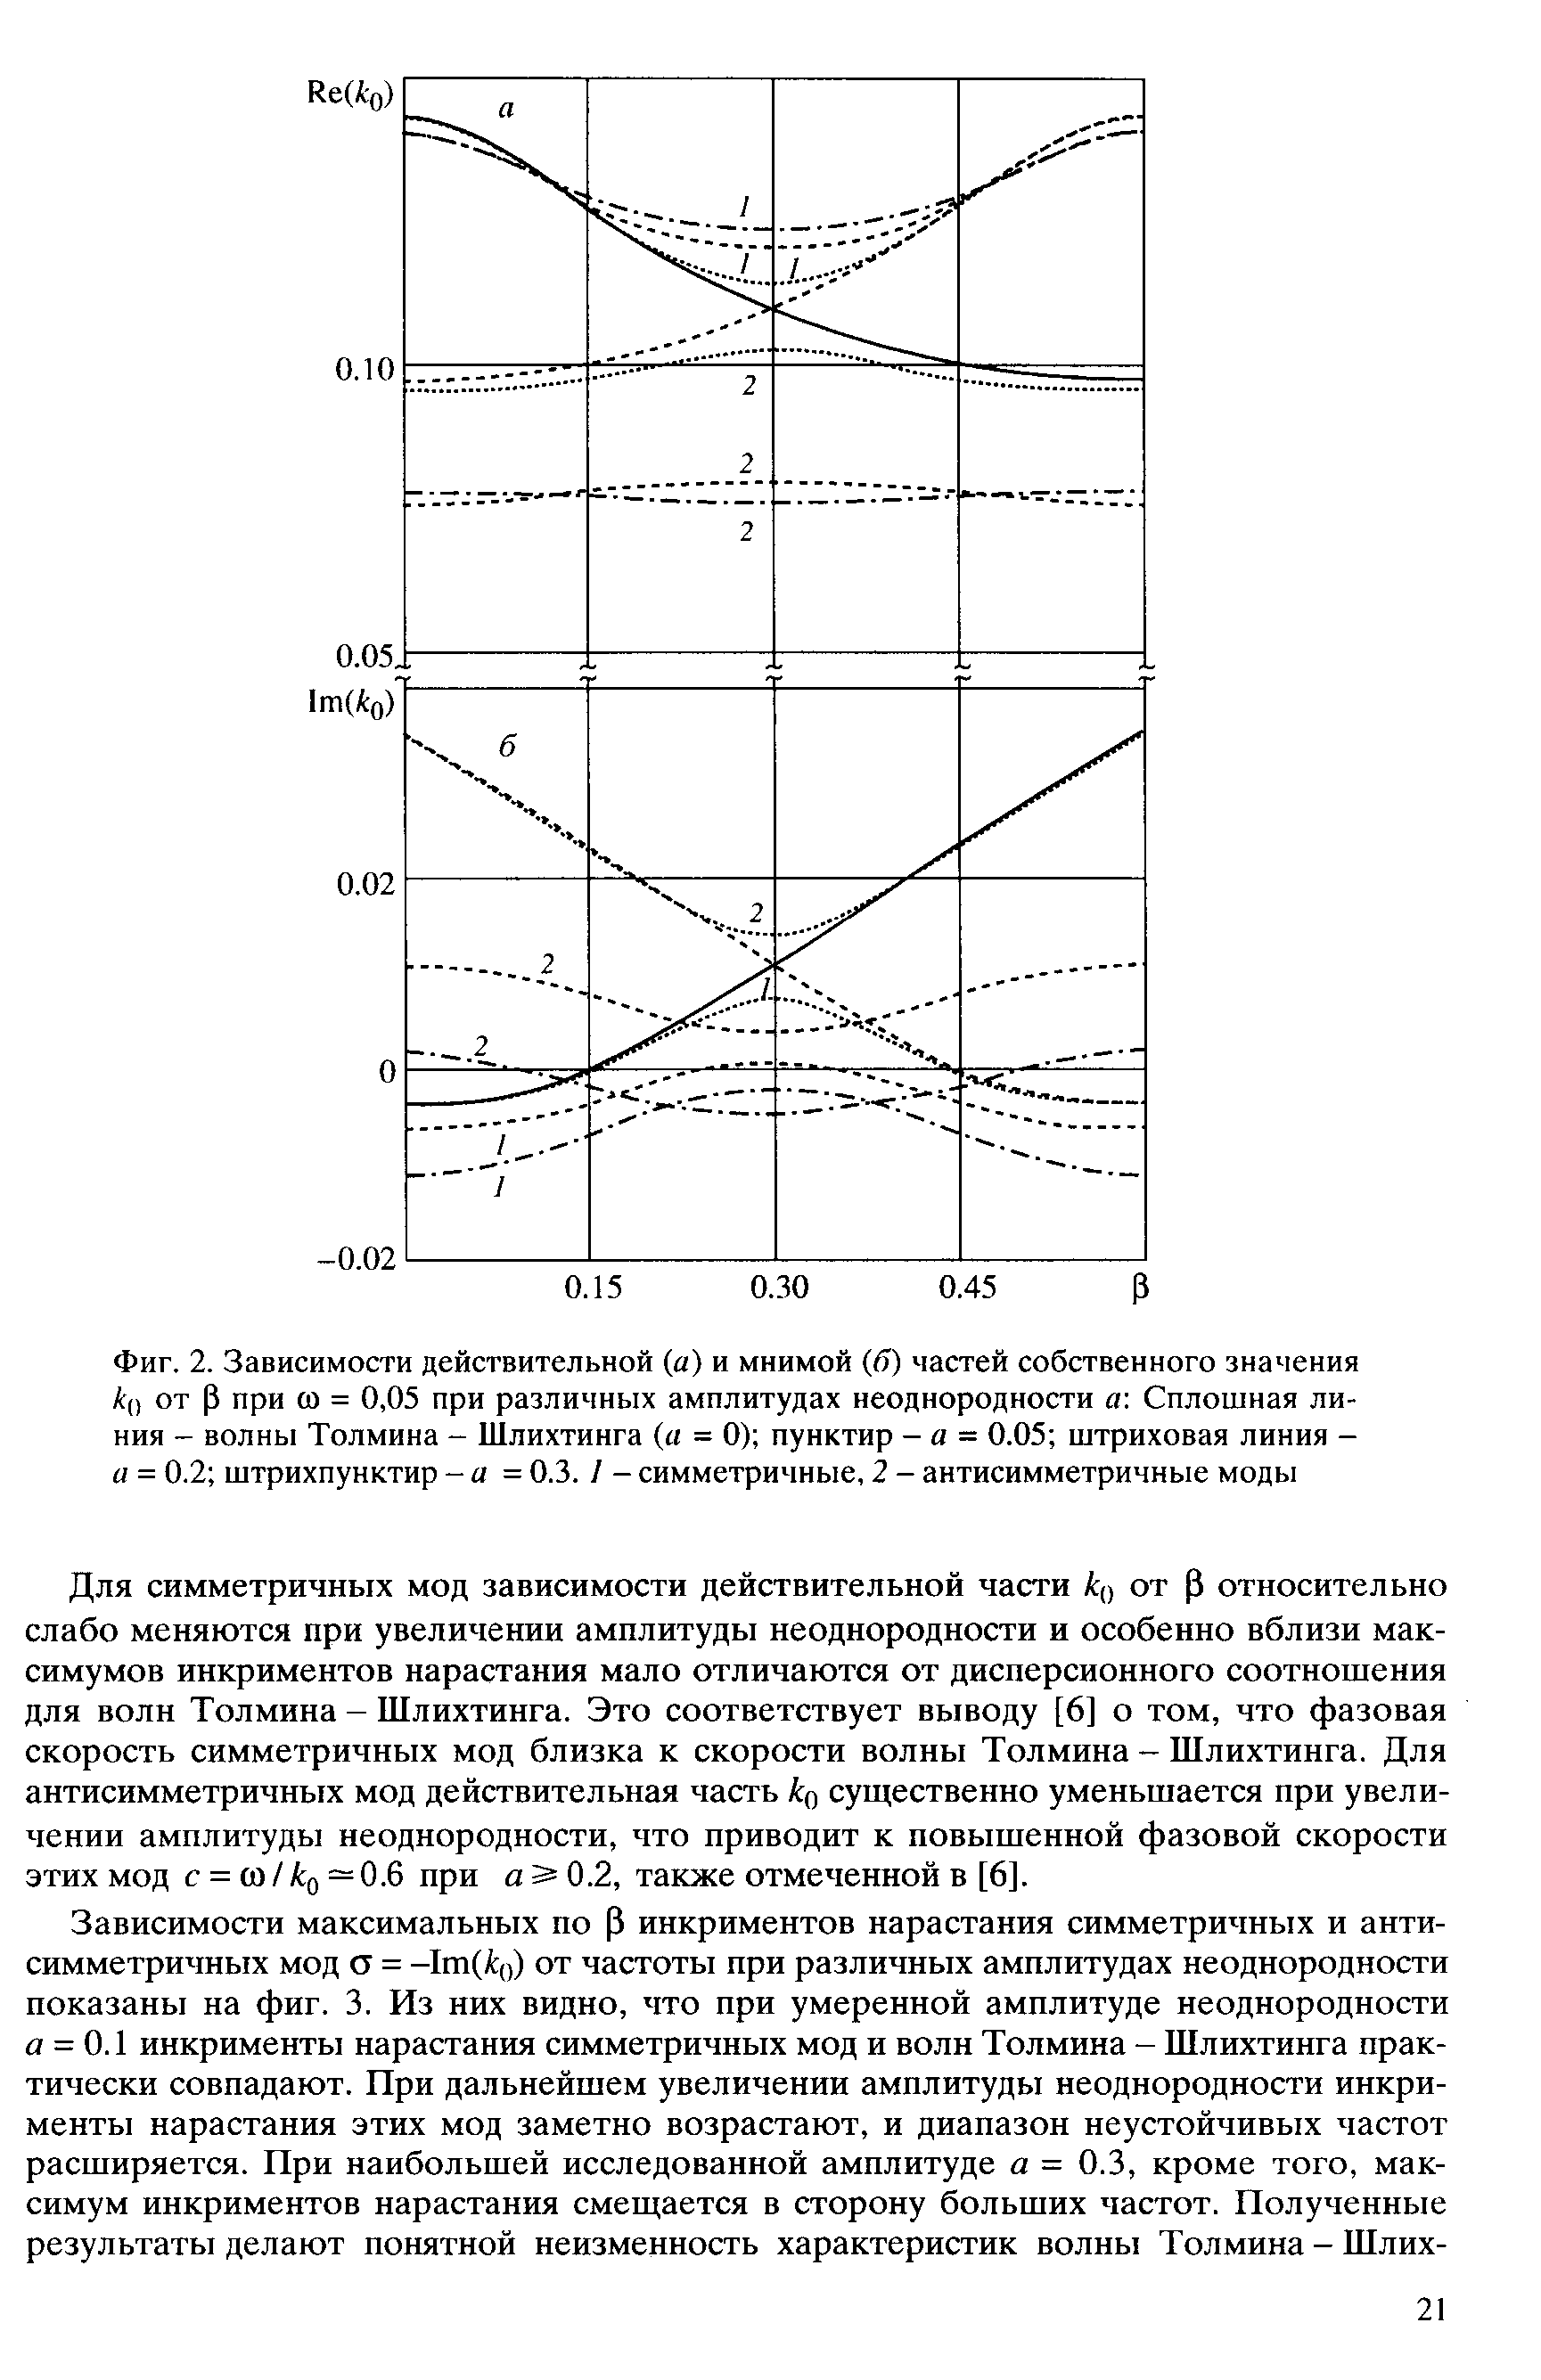 Фиг. 2. Зависимости действительной (а) и мнимой (б) частей собственного значения А() от Р при со = 0,05 при различных амплитудах неоднородности а Сплошная линия - волны Толмина - Шлихтинга (а = 0) пунктир - в = 0.05 штриховая линия -а = 0.2 штрихпунктир -а = 0.3. / - симметричные, 2 - антисимметричные моды
